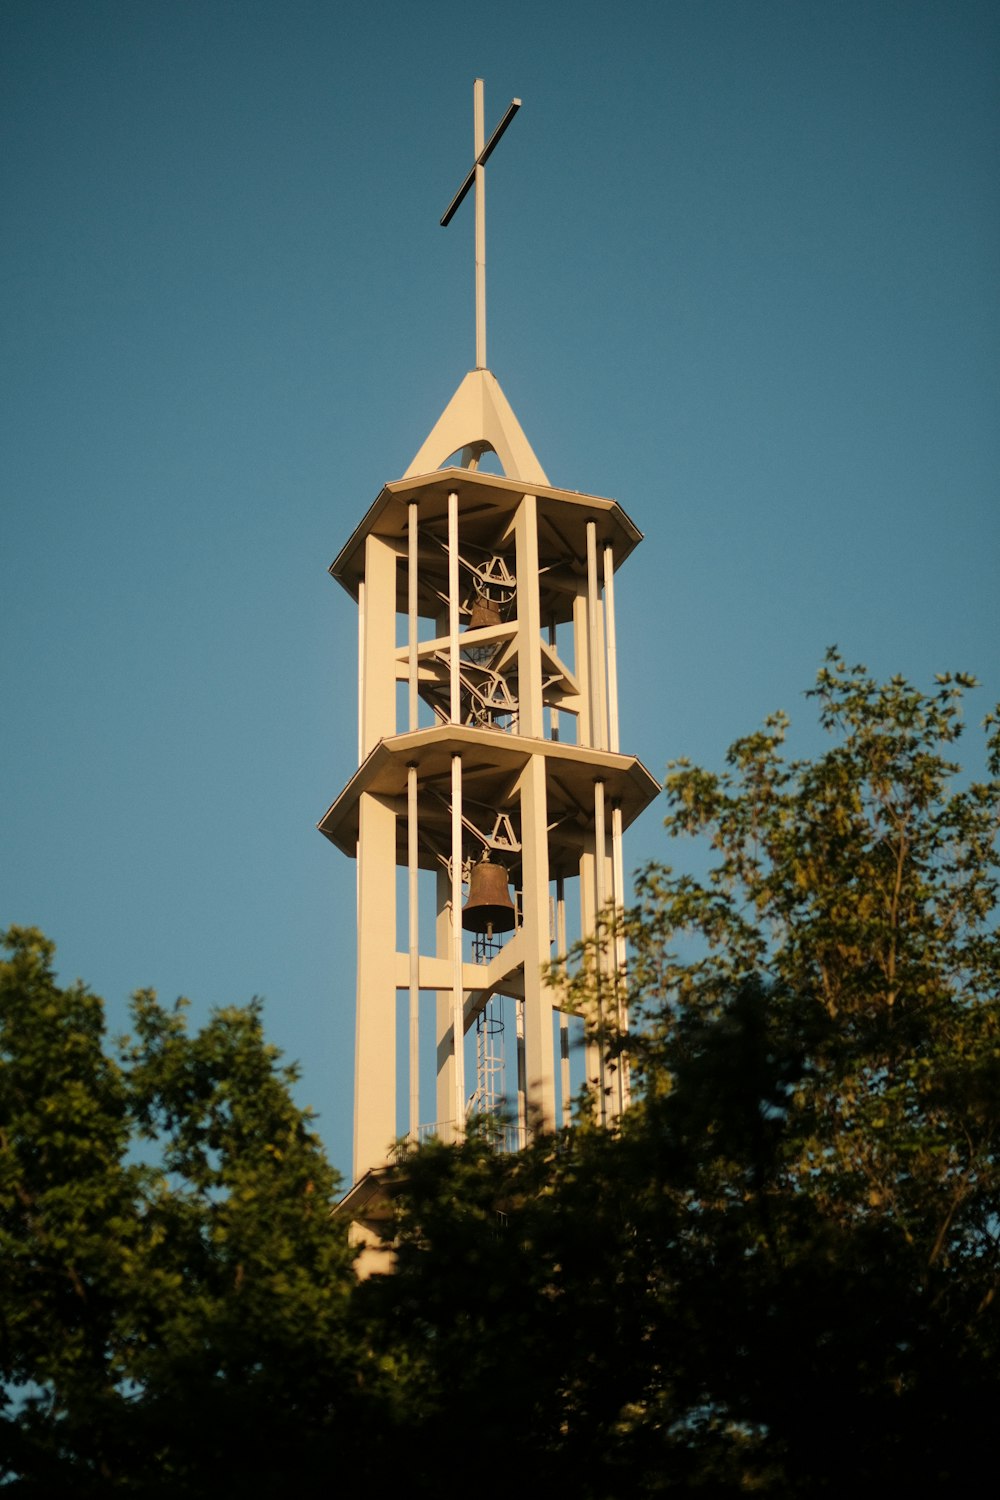 una alta torre de reloj con una cruz en la parte superior